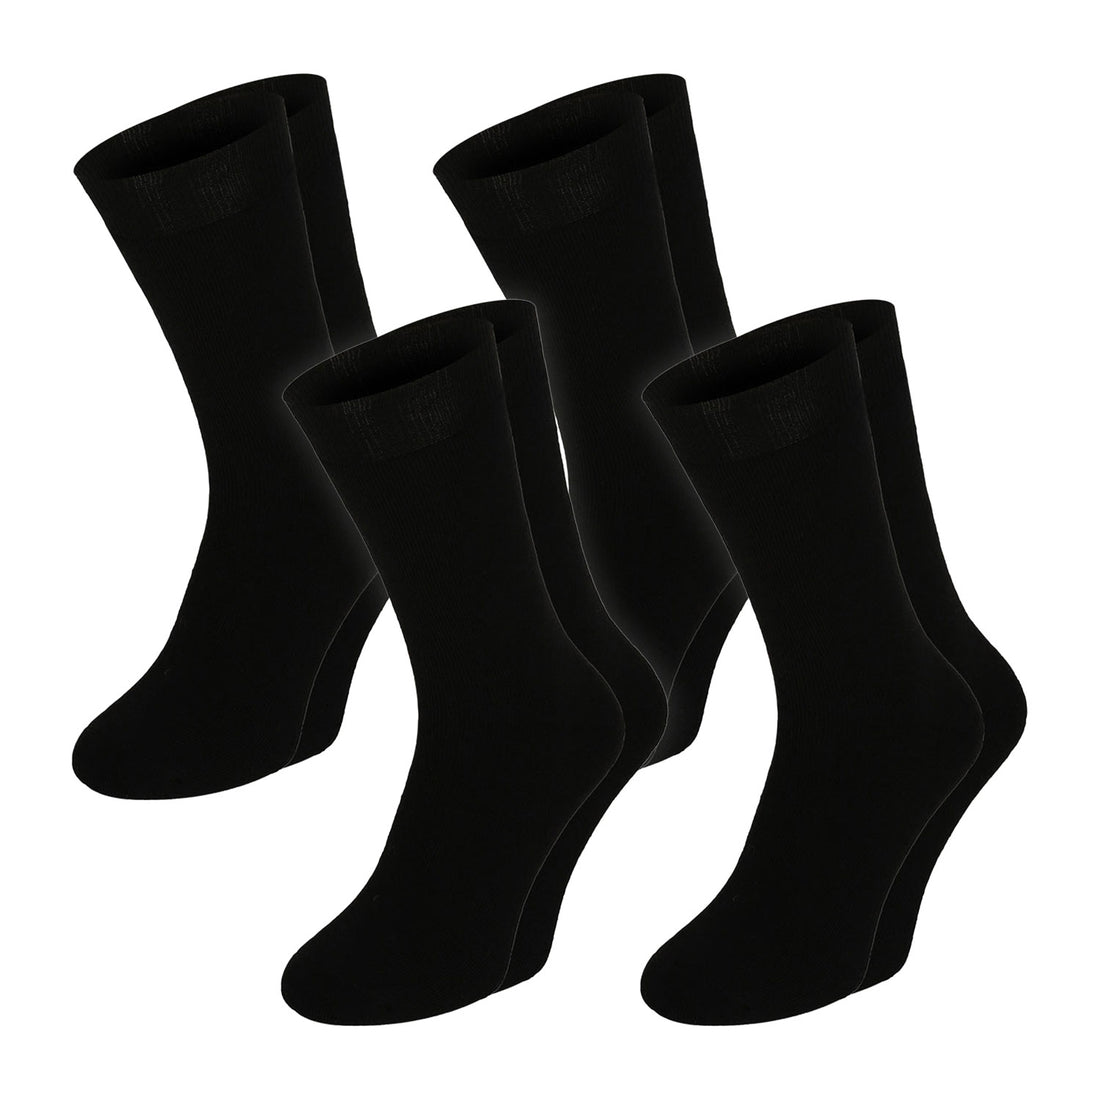 ChiliLifestyle Socken Super Thermo Winter Damen Herren Warm Weichbund 4 Paar